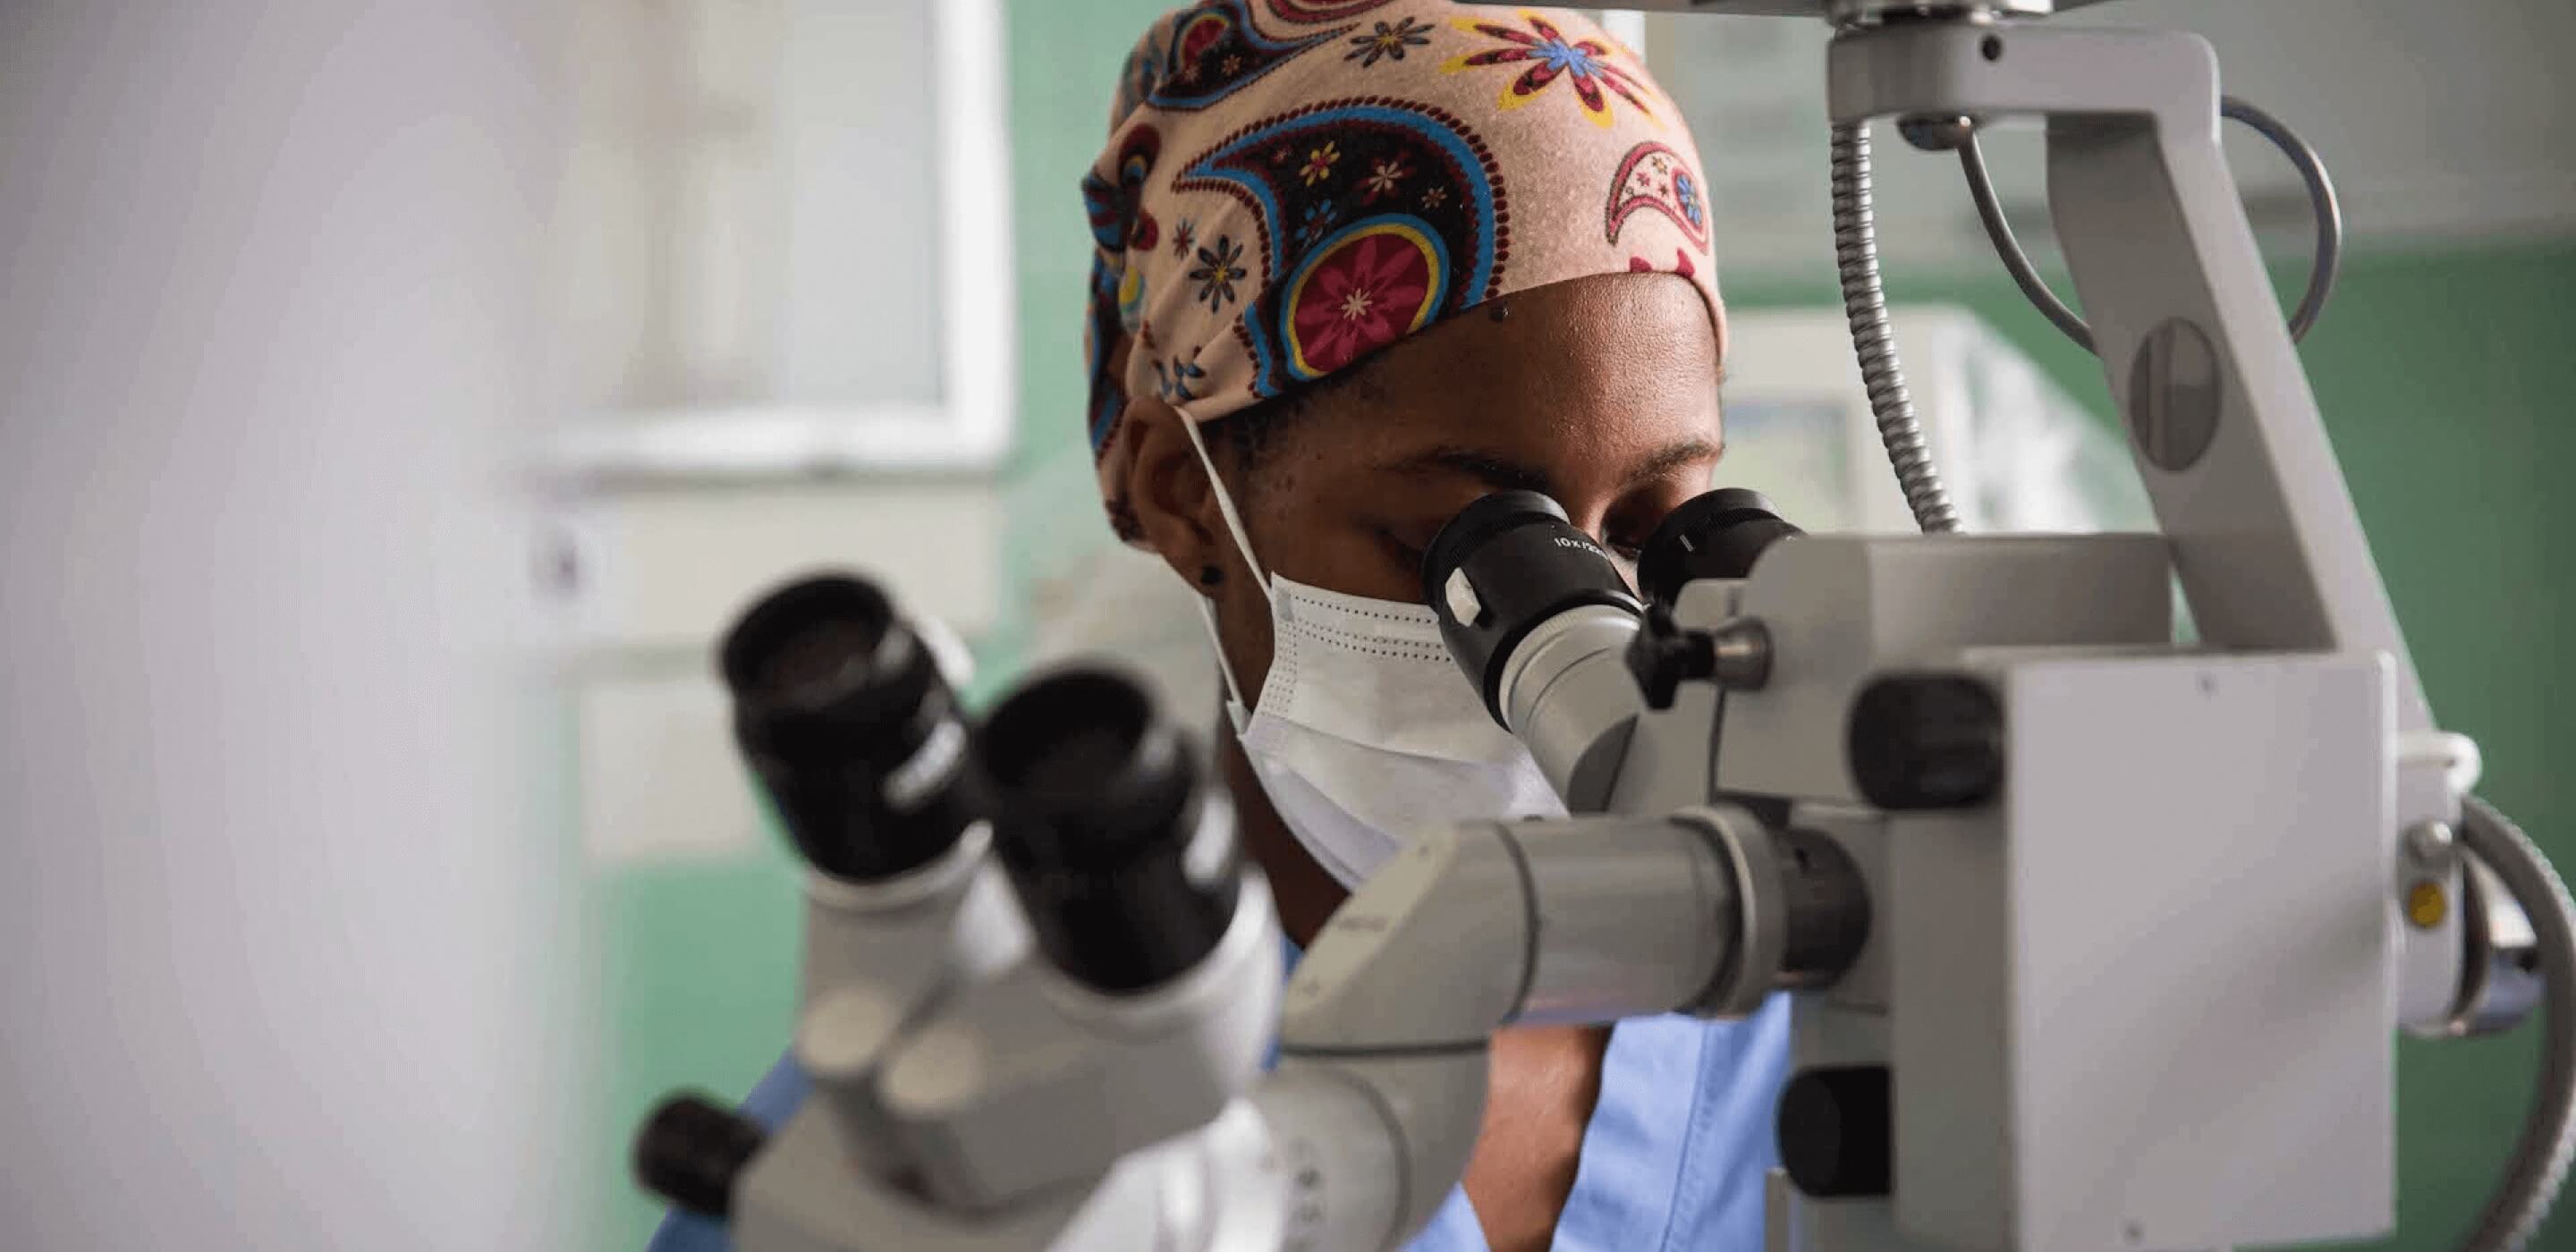 Investigador del cáncer con uniforme quirúrgico y mascarilla mirando por un microscopio.